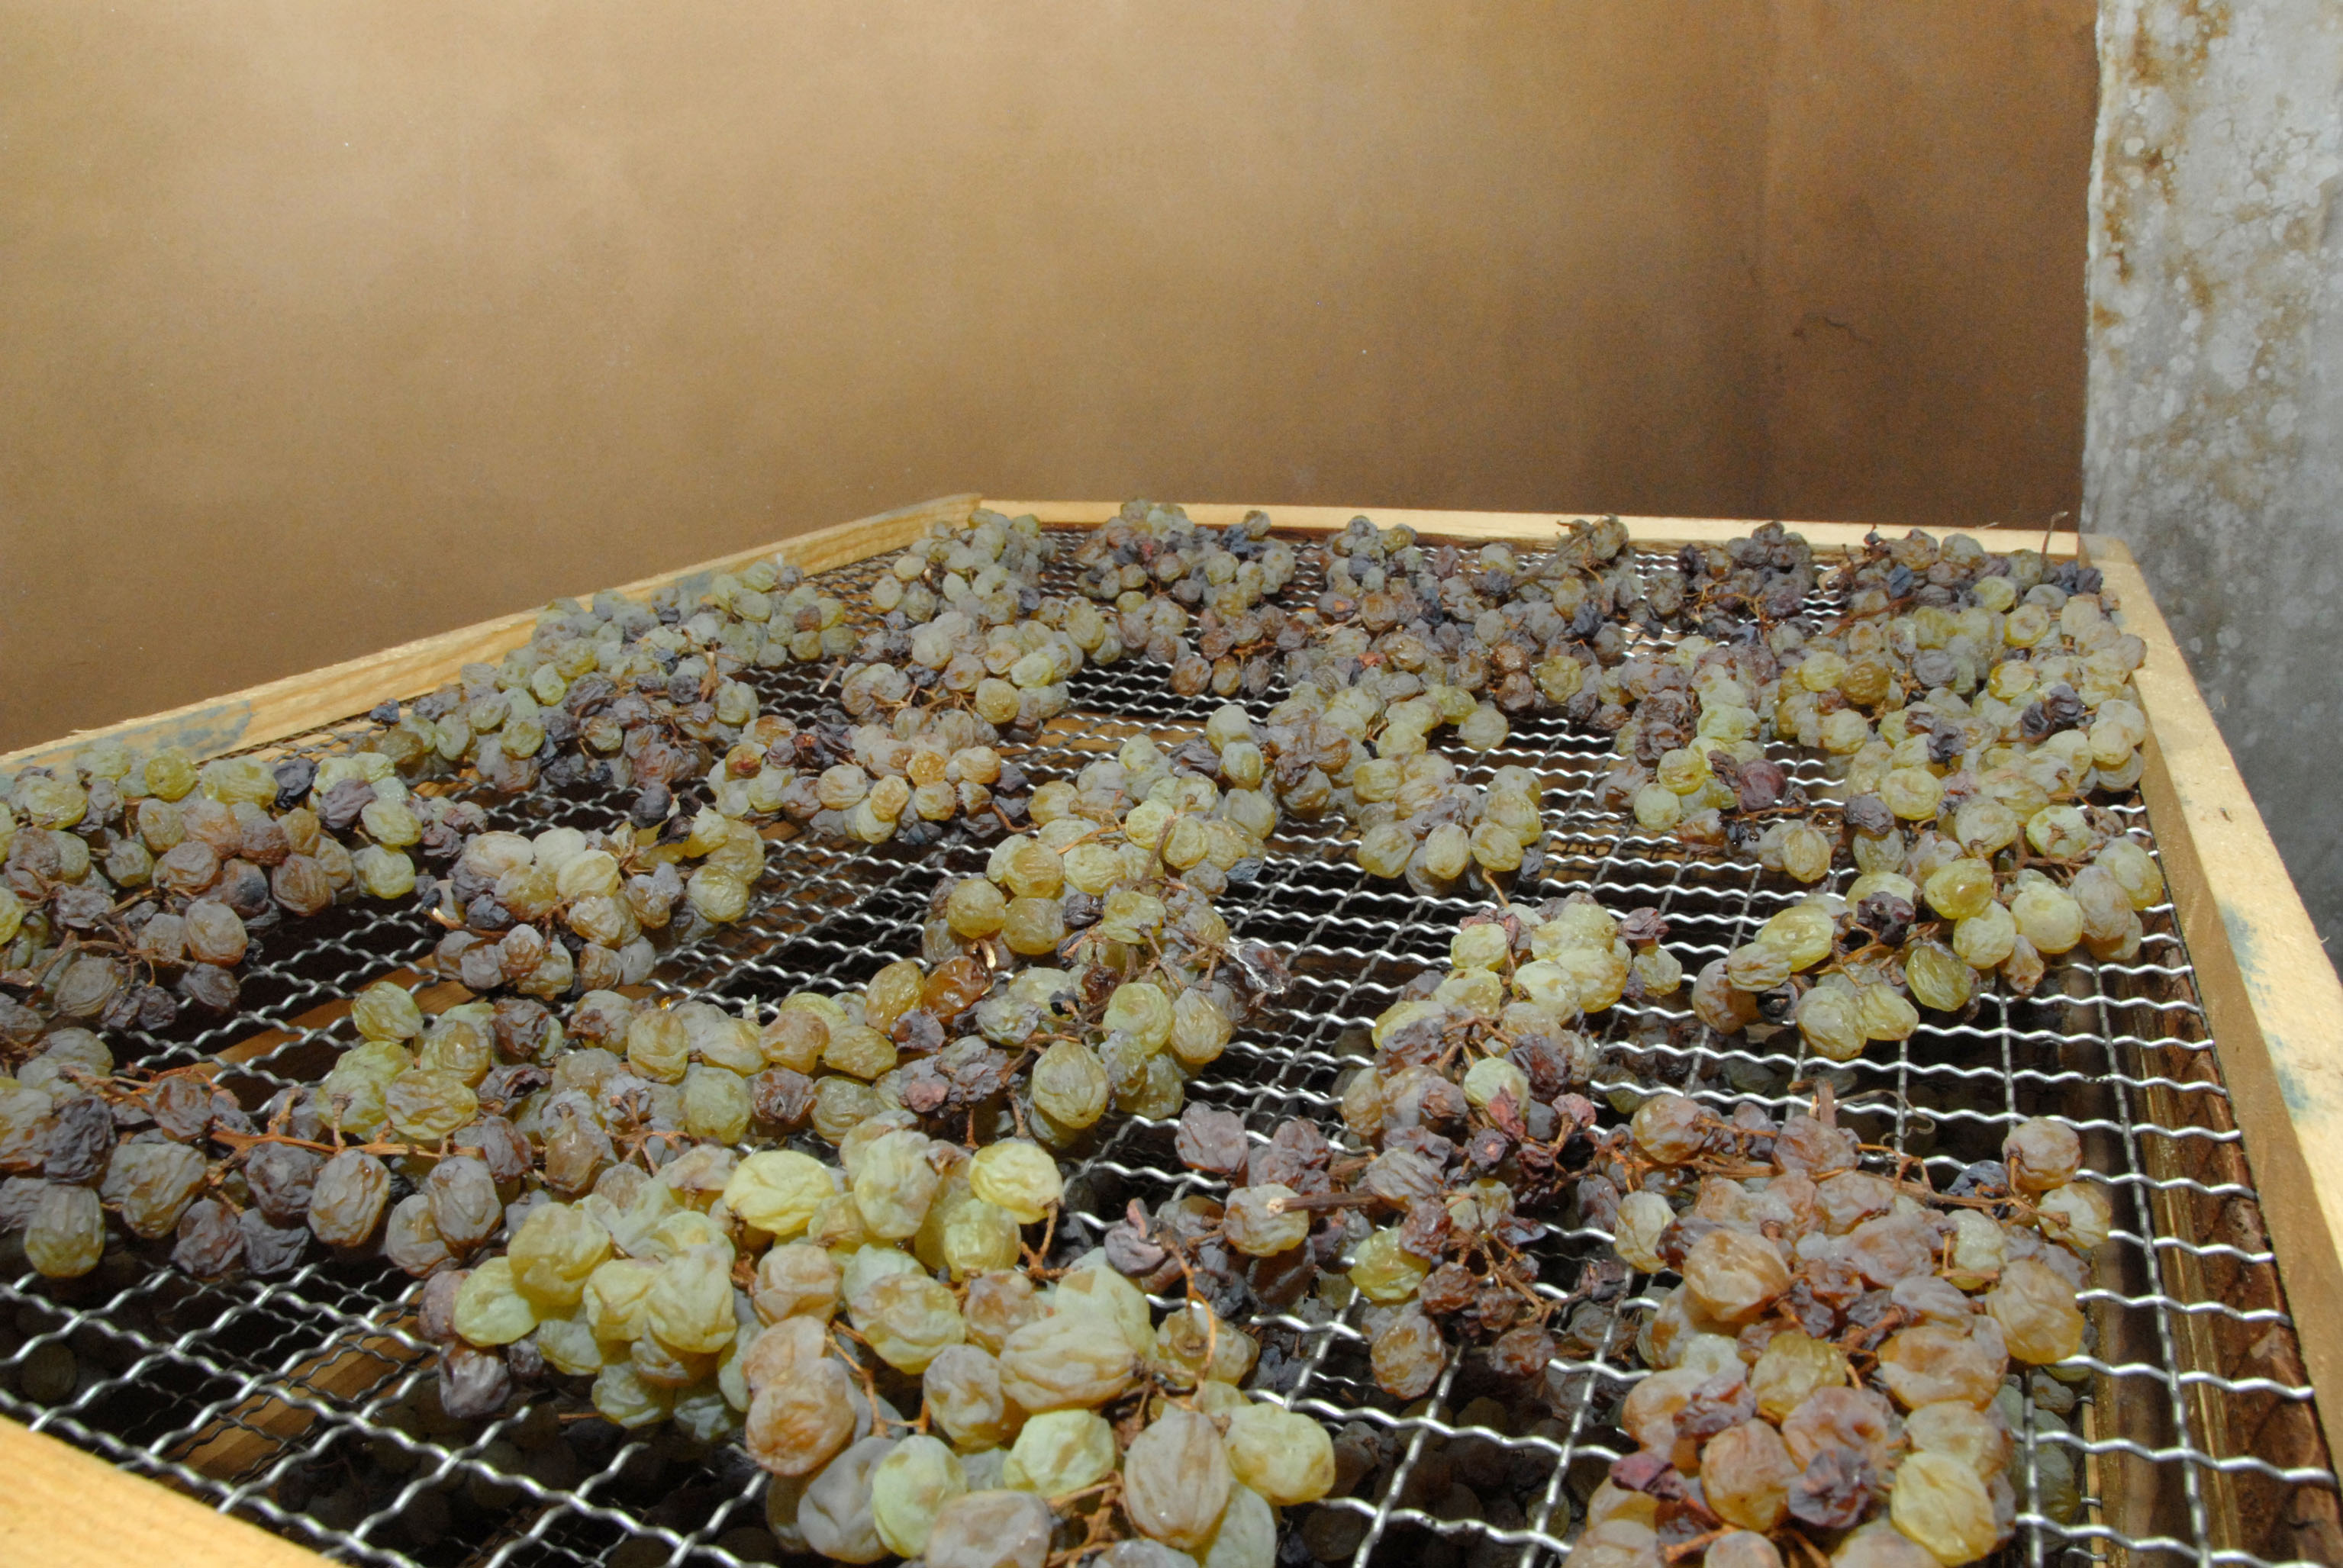 Appassimento delle uve in preparazione per diventare vinsanto (CCIAA Trento)